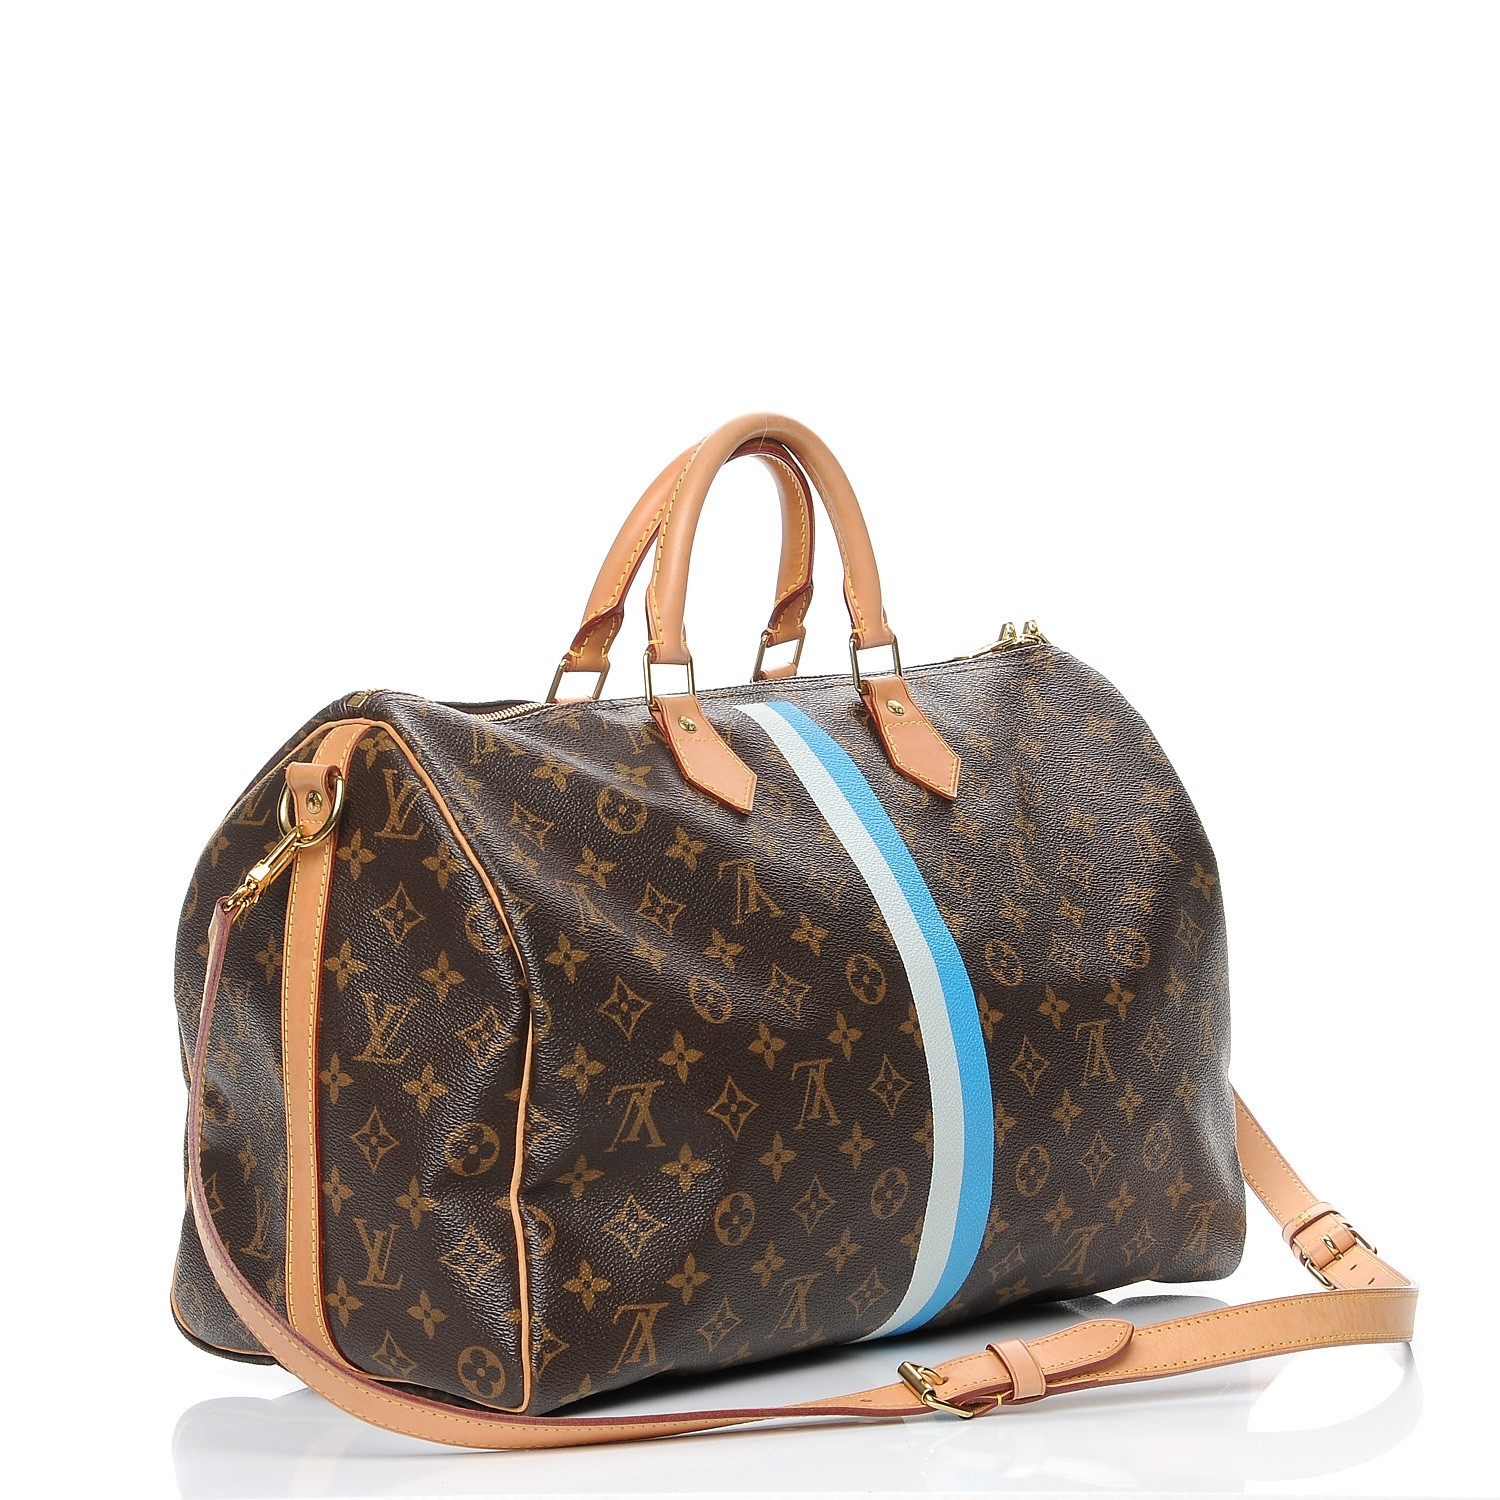 Louis Vuitton, Bags, Authentic Louis Vuitton Speedy 35 Lv Heritage